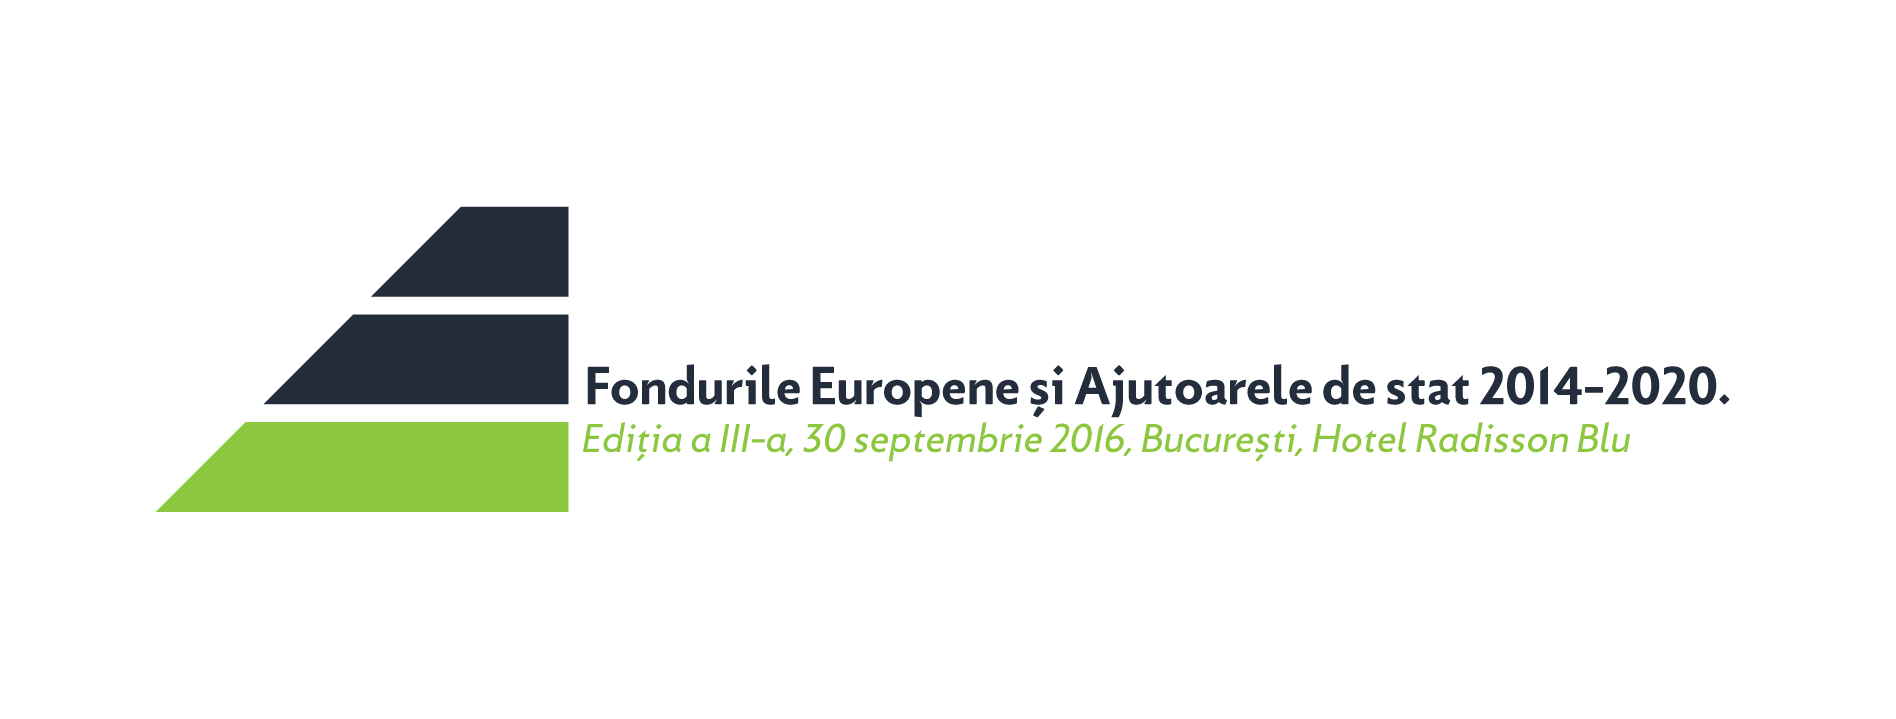 Fondurile europene și Ajutoarele de Stat 2014-2020, ediția a III-a